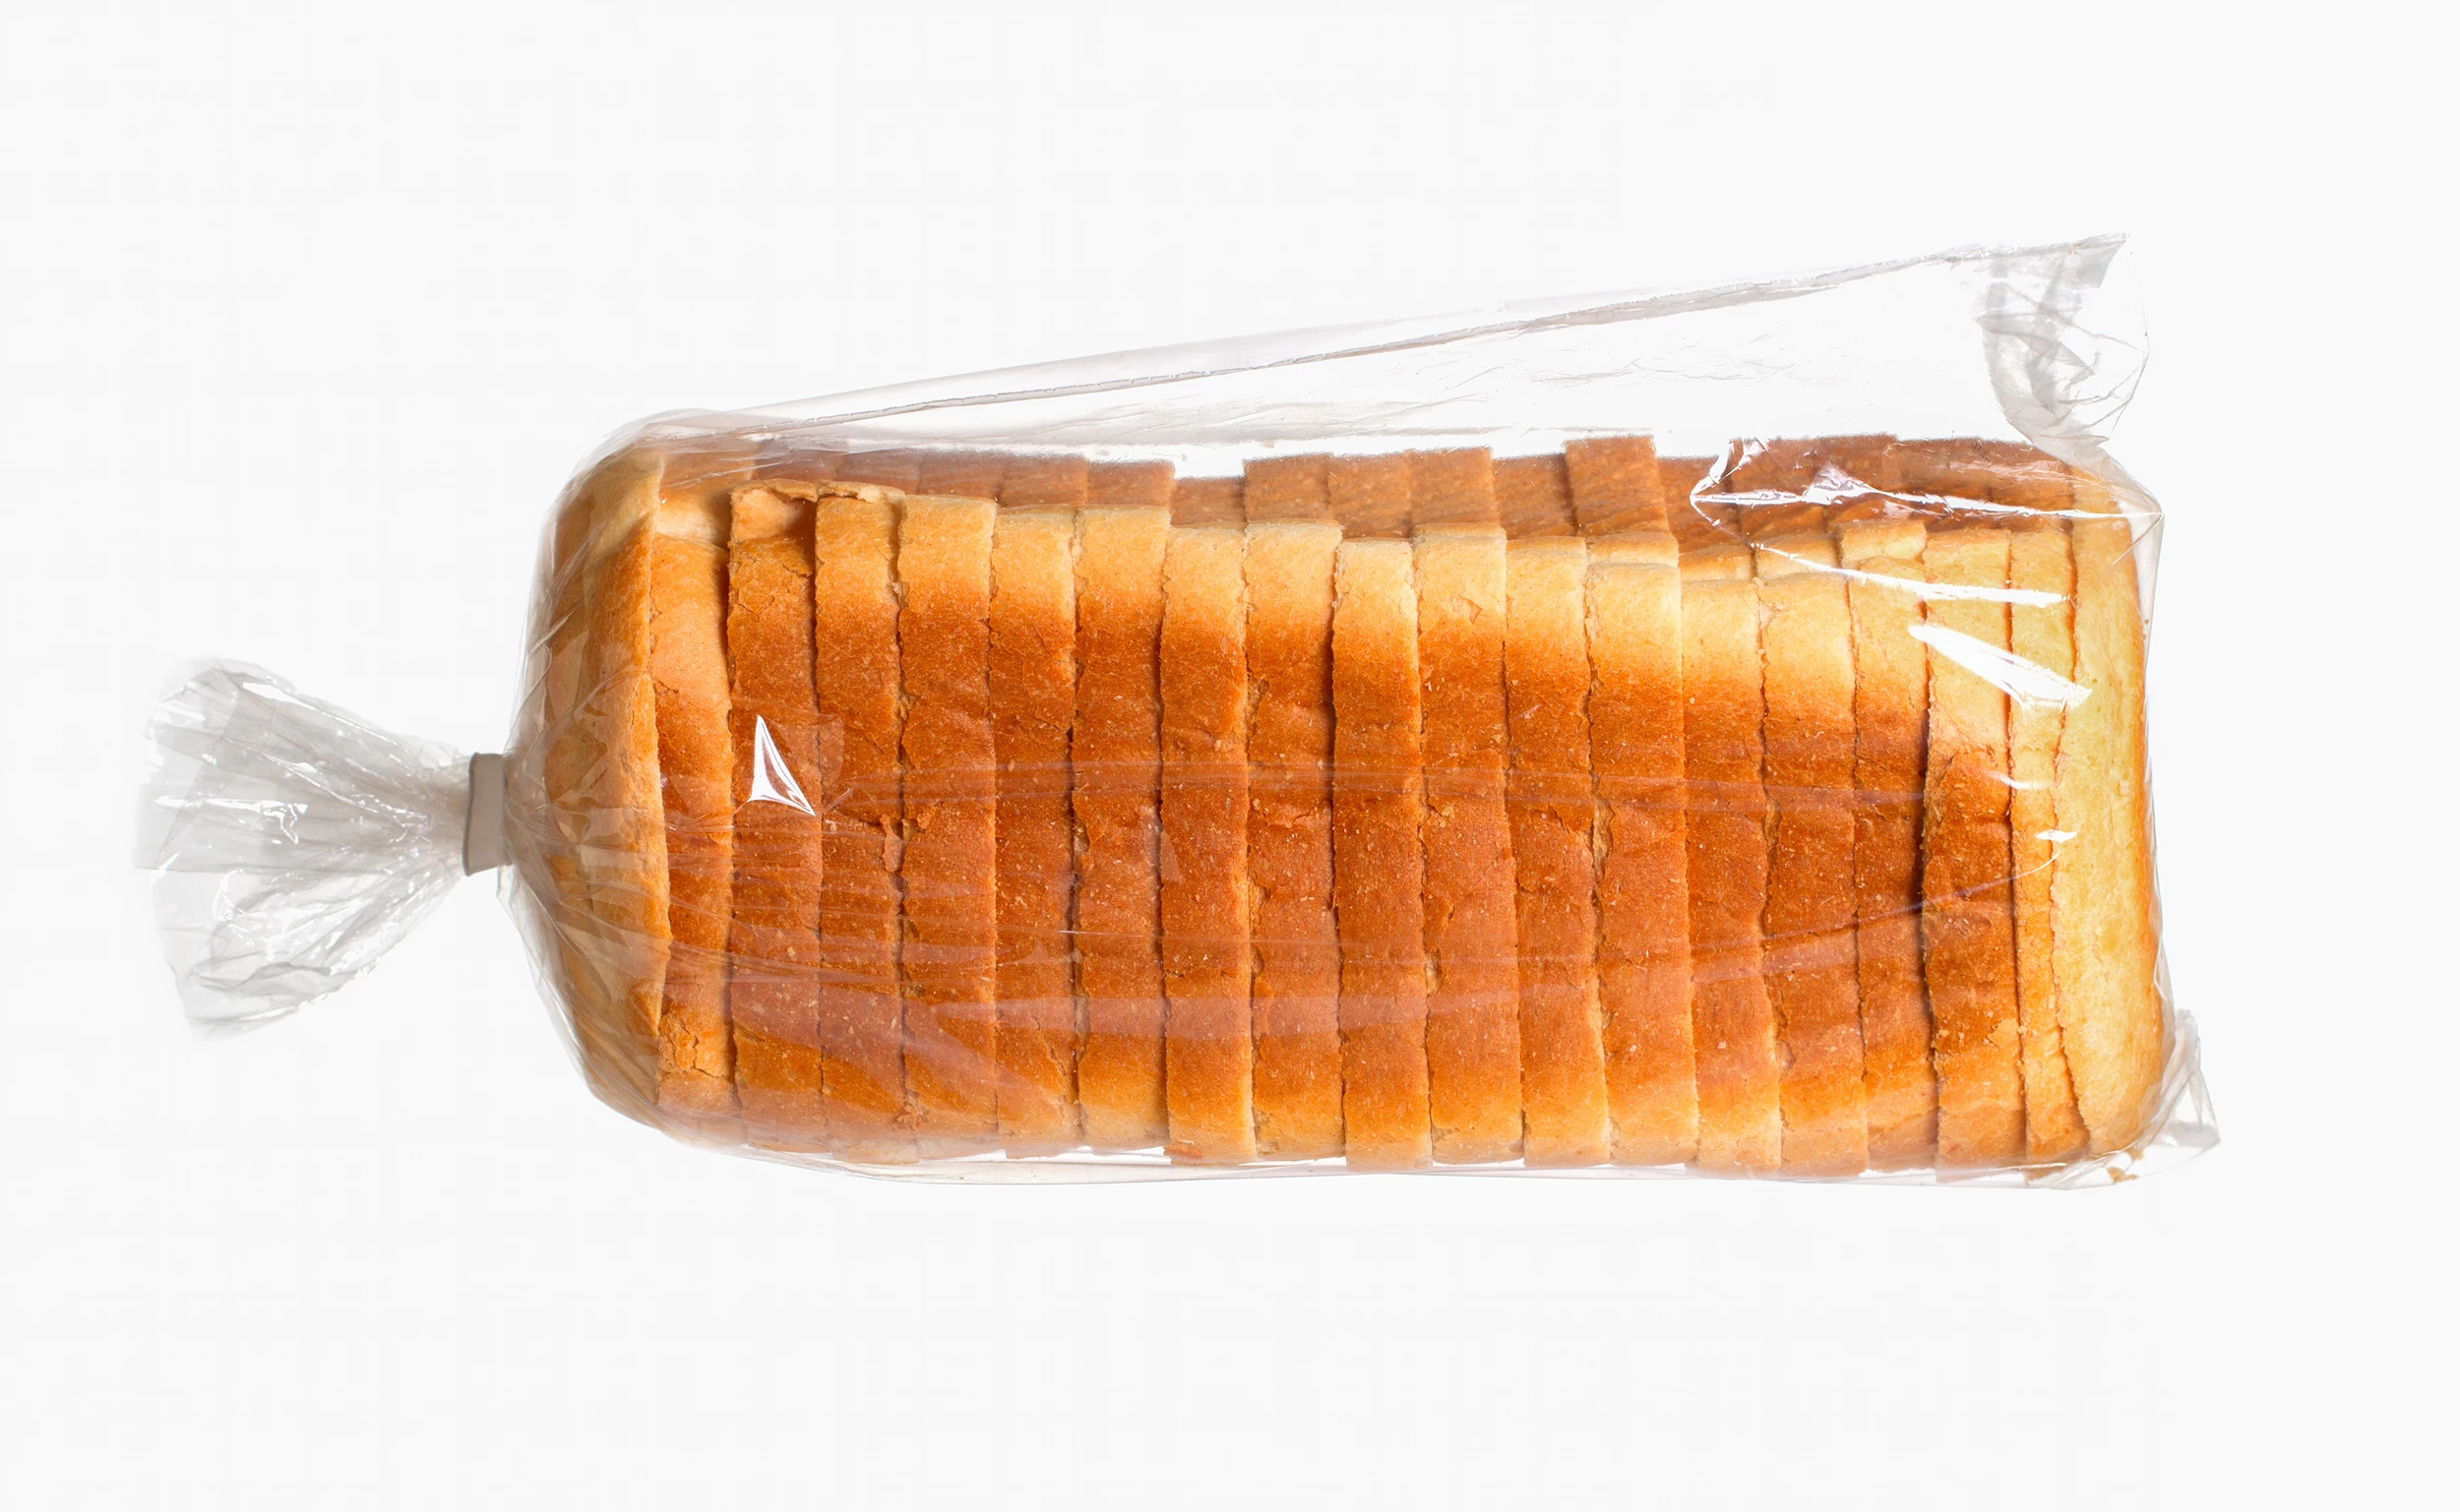 bread tag color code